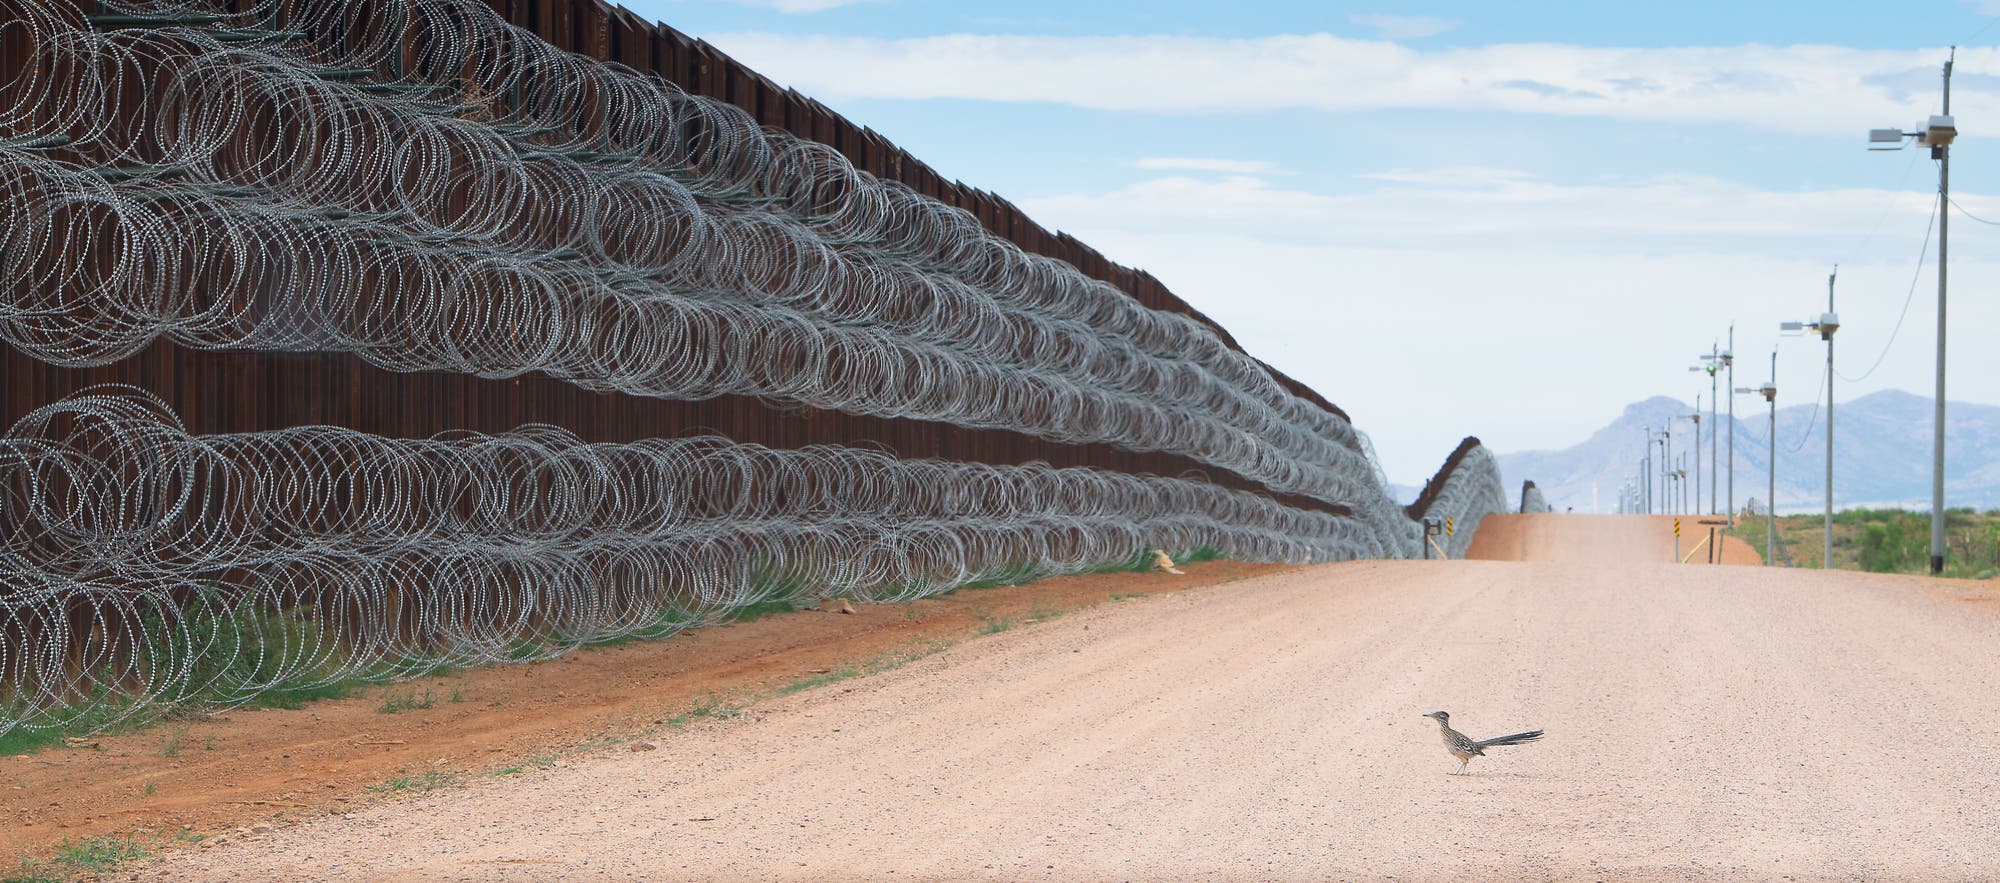 Ein Großer Rennkuckuck steht vor dem Grenzzaun zwischen Mexiko und den USA